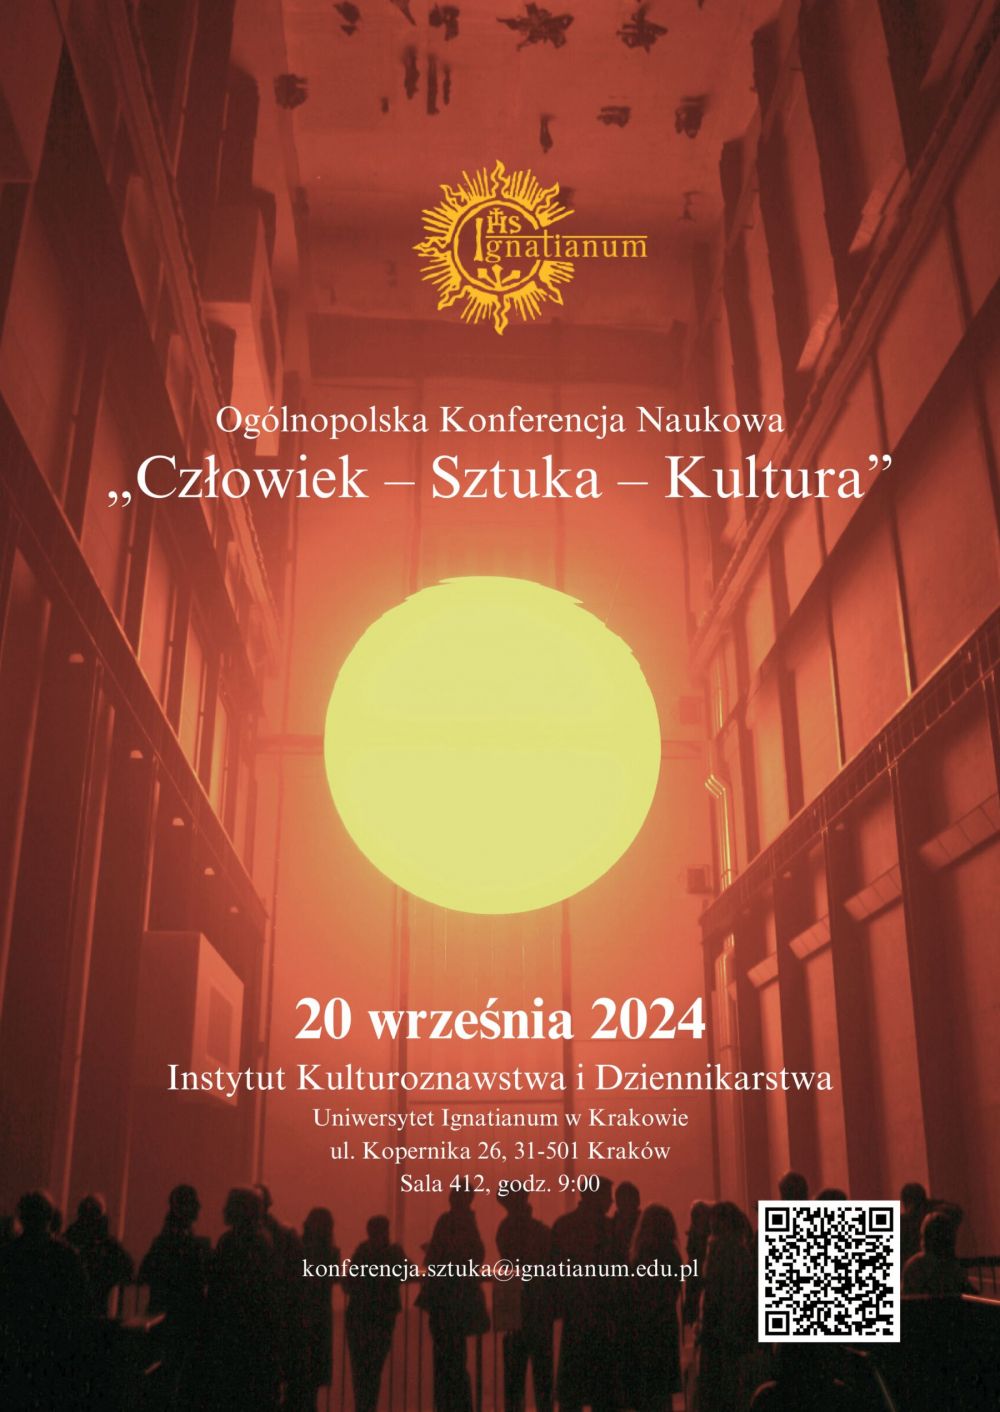 Człowiek - Sztuka - Kultura - Ogólnopolska Konfernecja Naukowa w Uniwersytecie Ignatianum